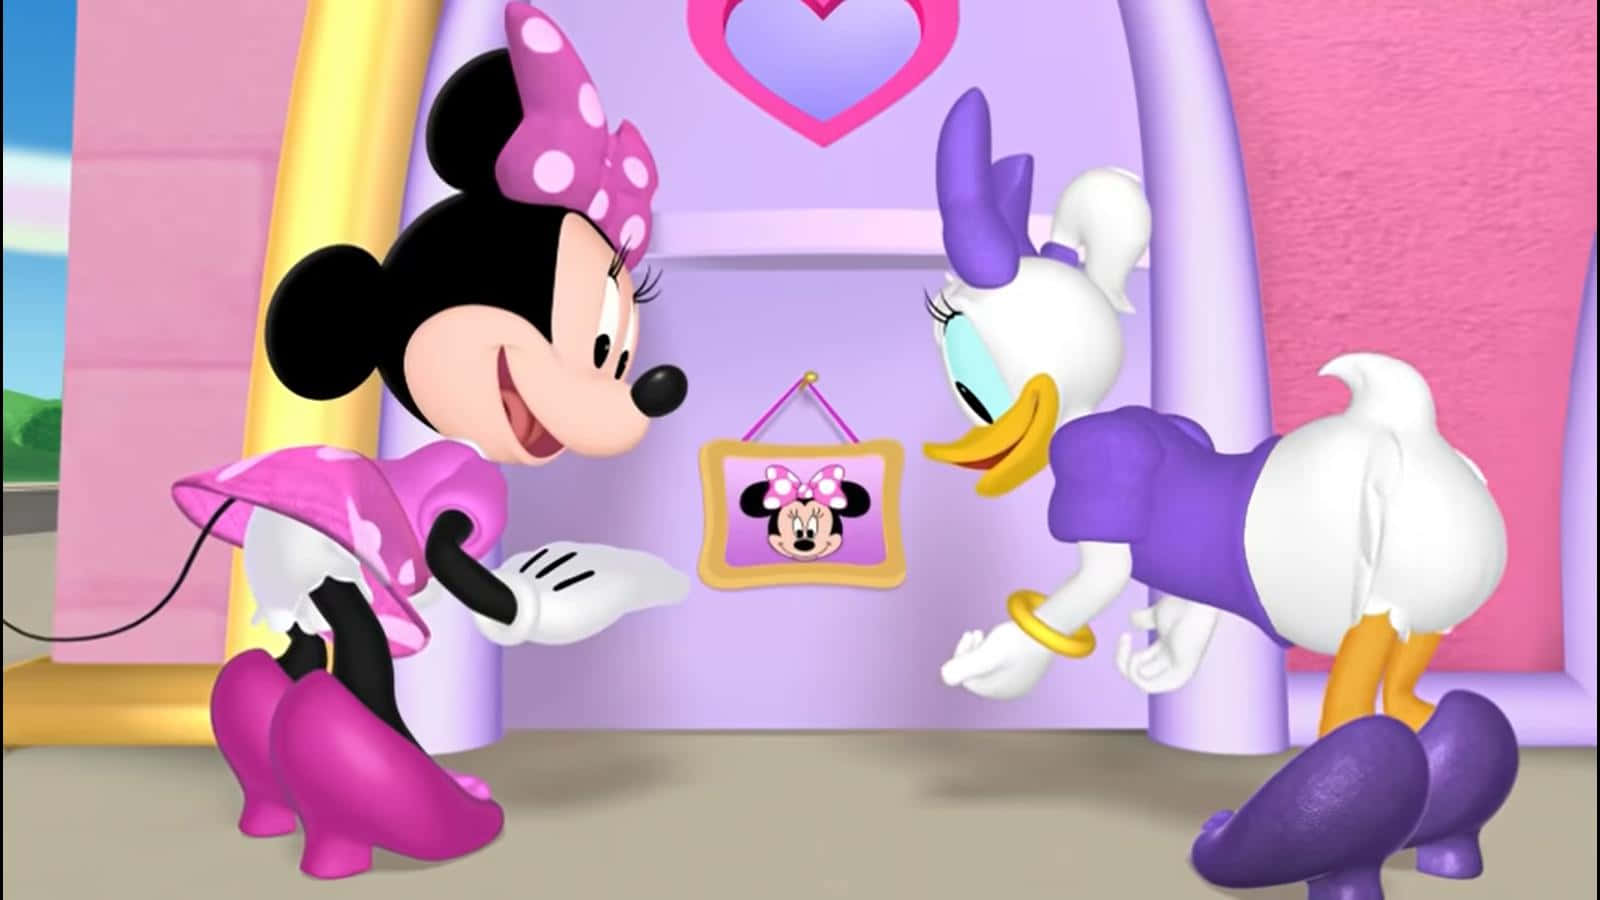 Minniemaus Und Donald Duck In Einem Rosa Und Lila Haus. Wallpaper